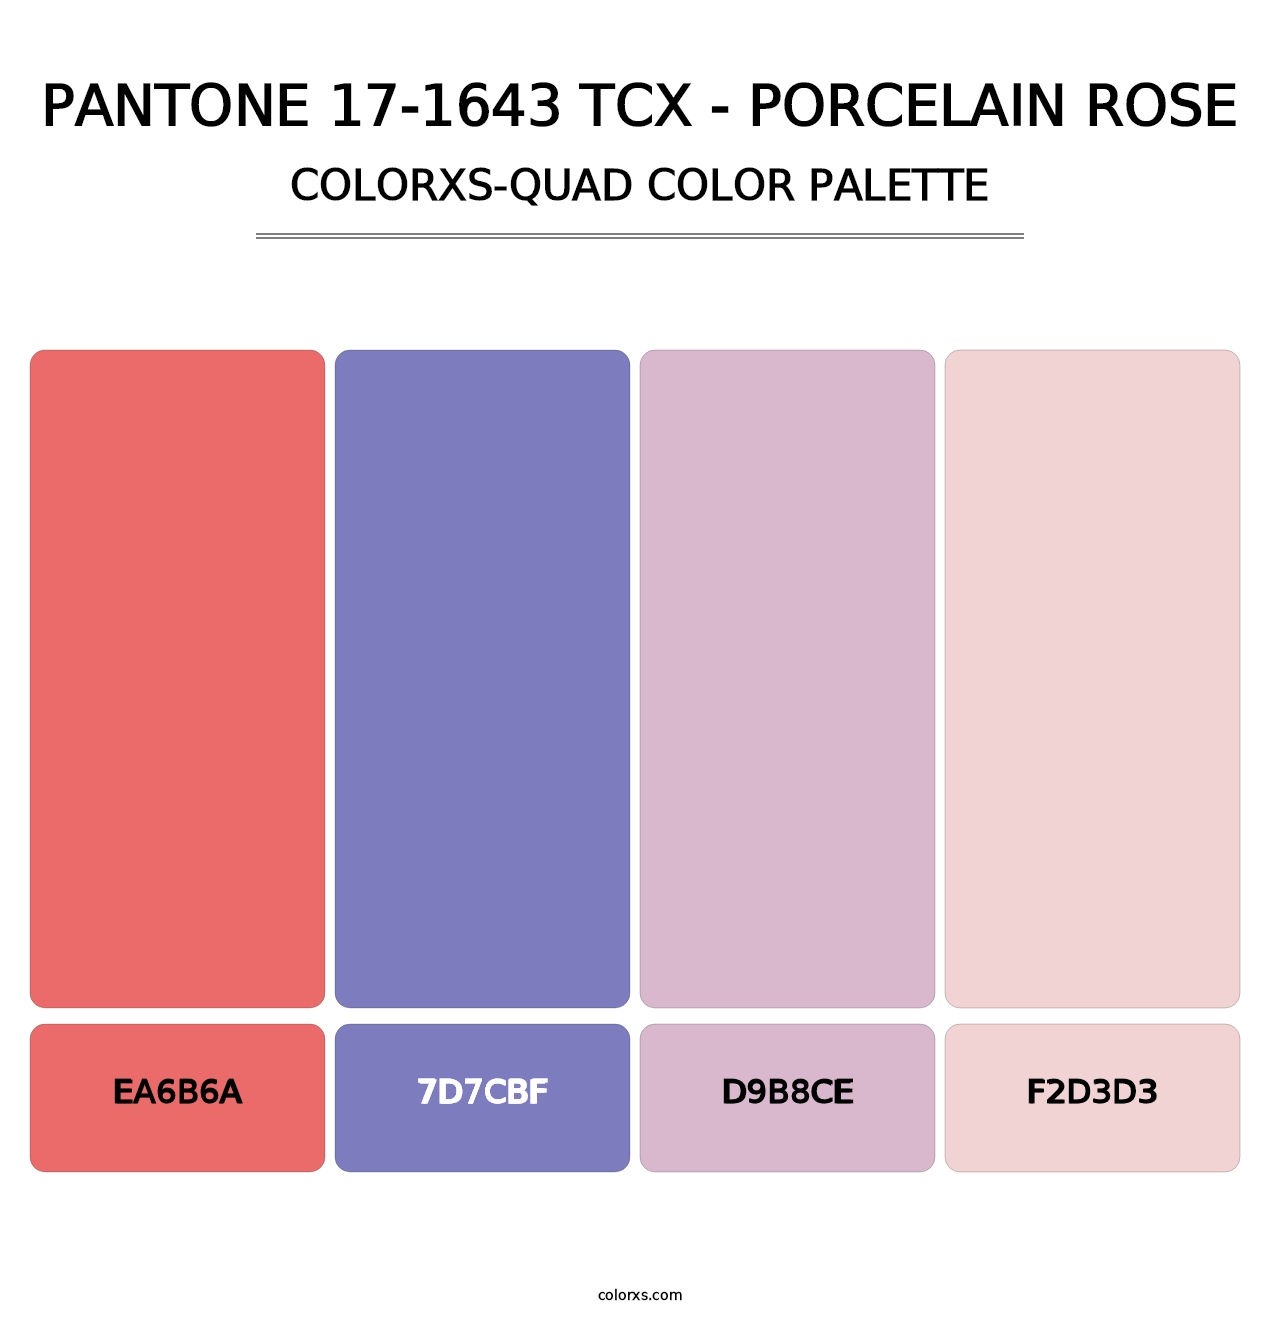 PANTONE 17-1643 TCX - Porcelain Rose - Colorxs Quad Palette